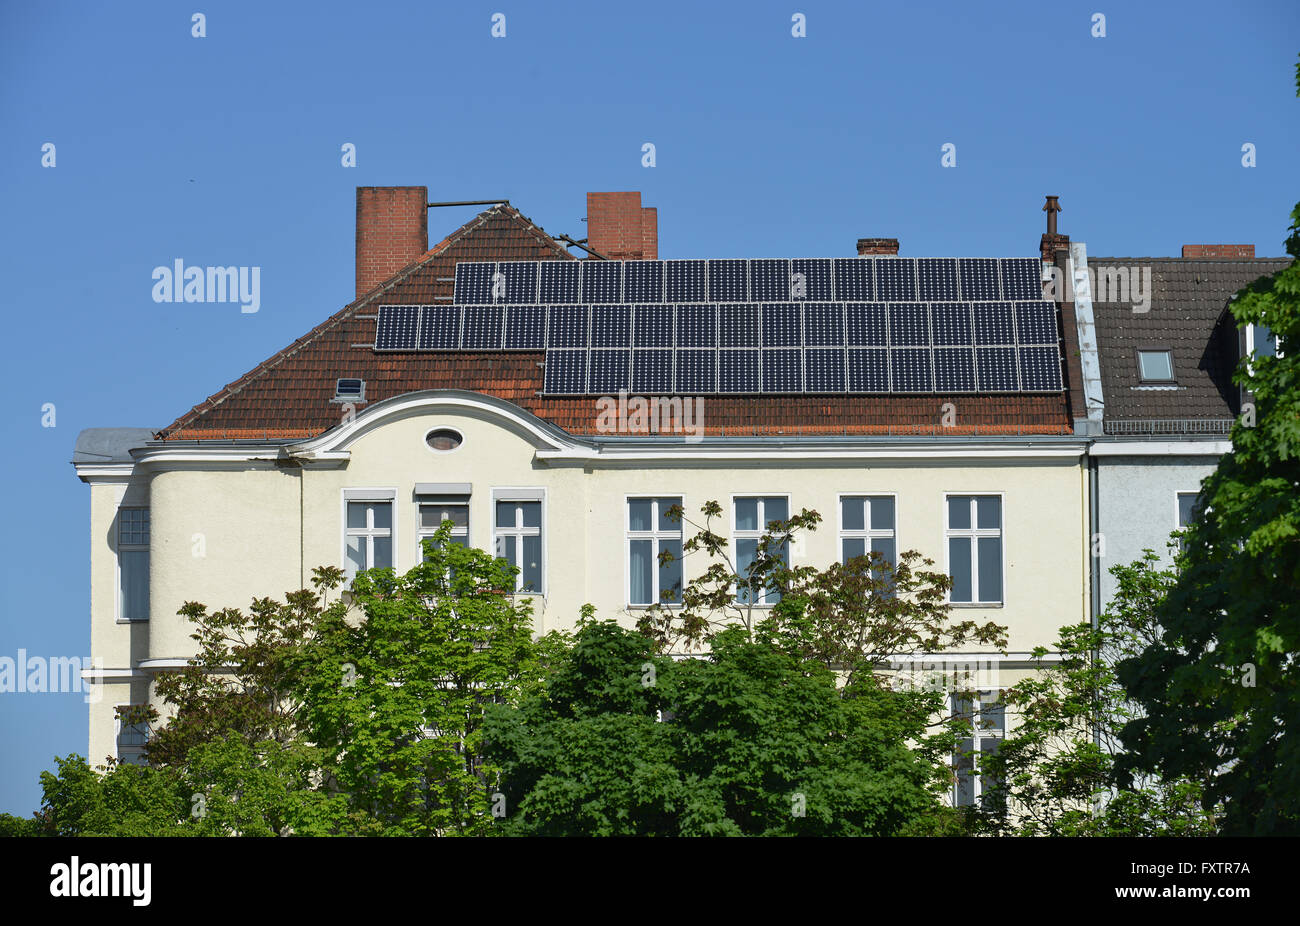 Solardach, Altbau, Fregestraße, Steglitz, Berlin, Deutschland Stockfoto